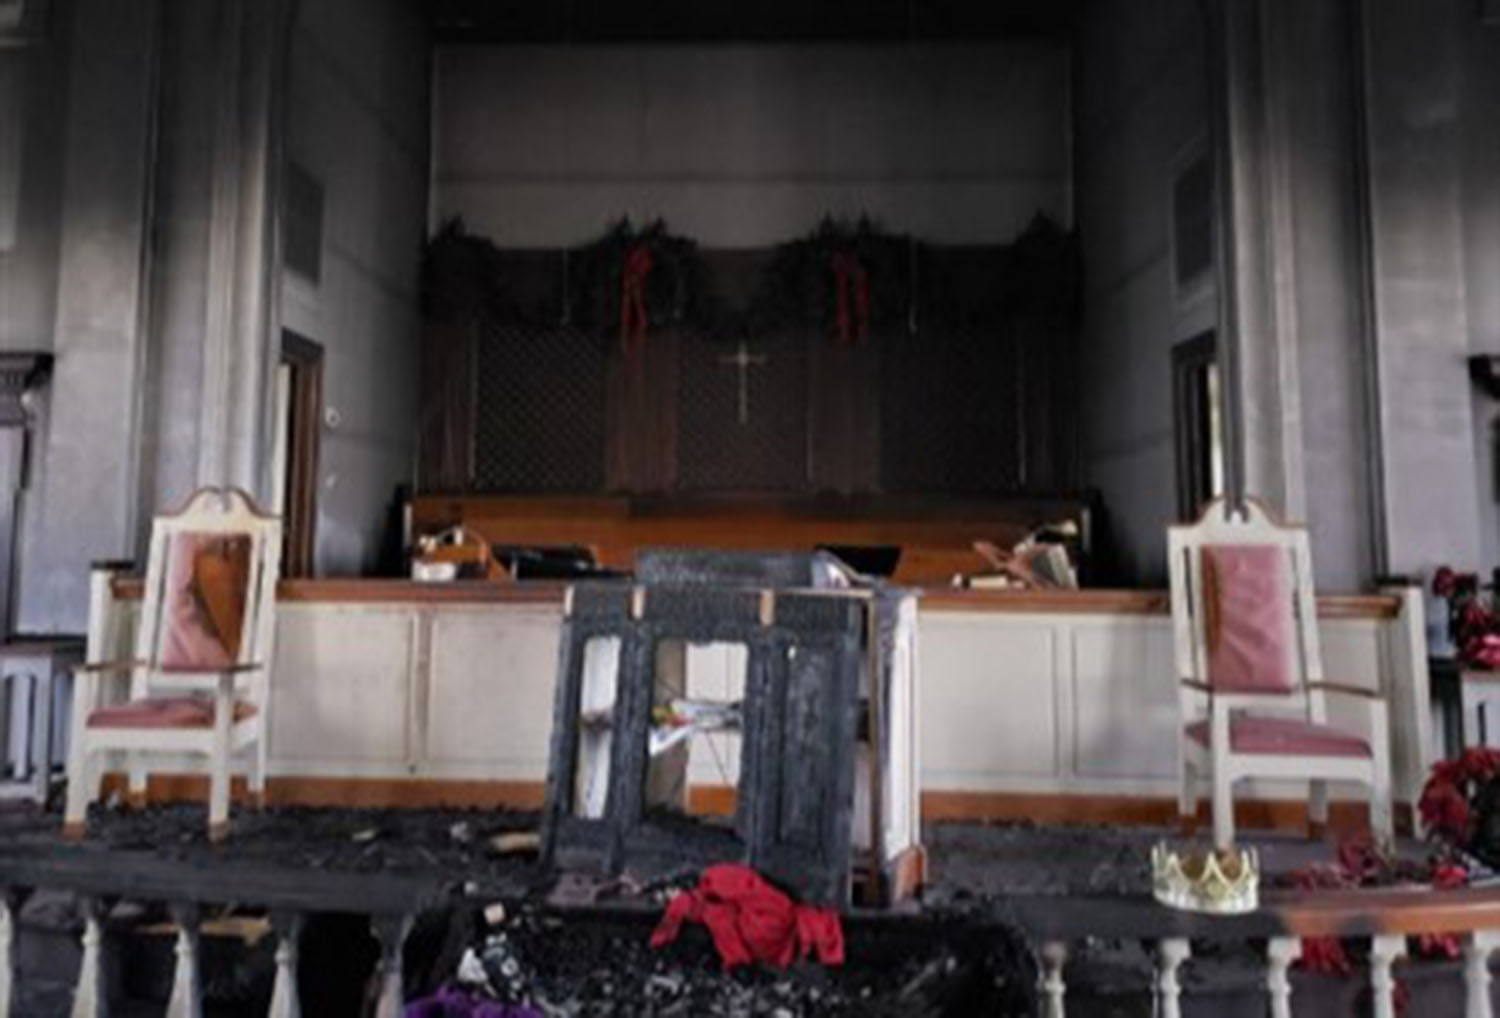 El incendio dejó a la IMU Baxley de pie, pero gran parte del interior, incluido un piano, un órgano, proyectores, una mesa de comunión, un pesebre, luces y pisos fueron destruidos. Foto cortesía de la Conferencia Anual del Sur de Georgia.